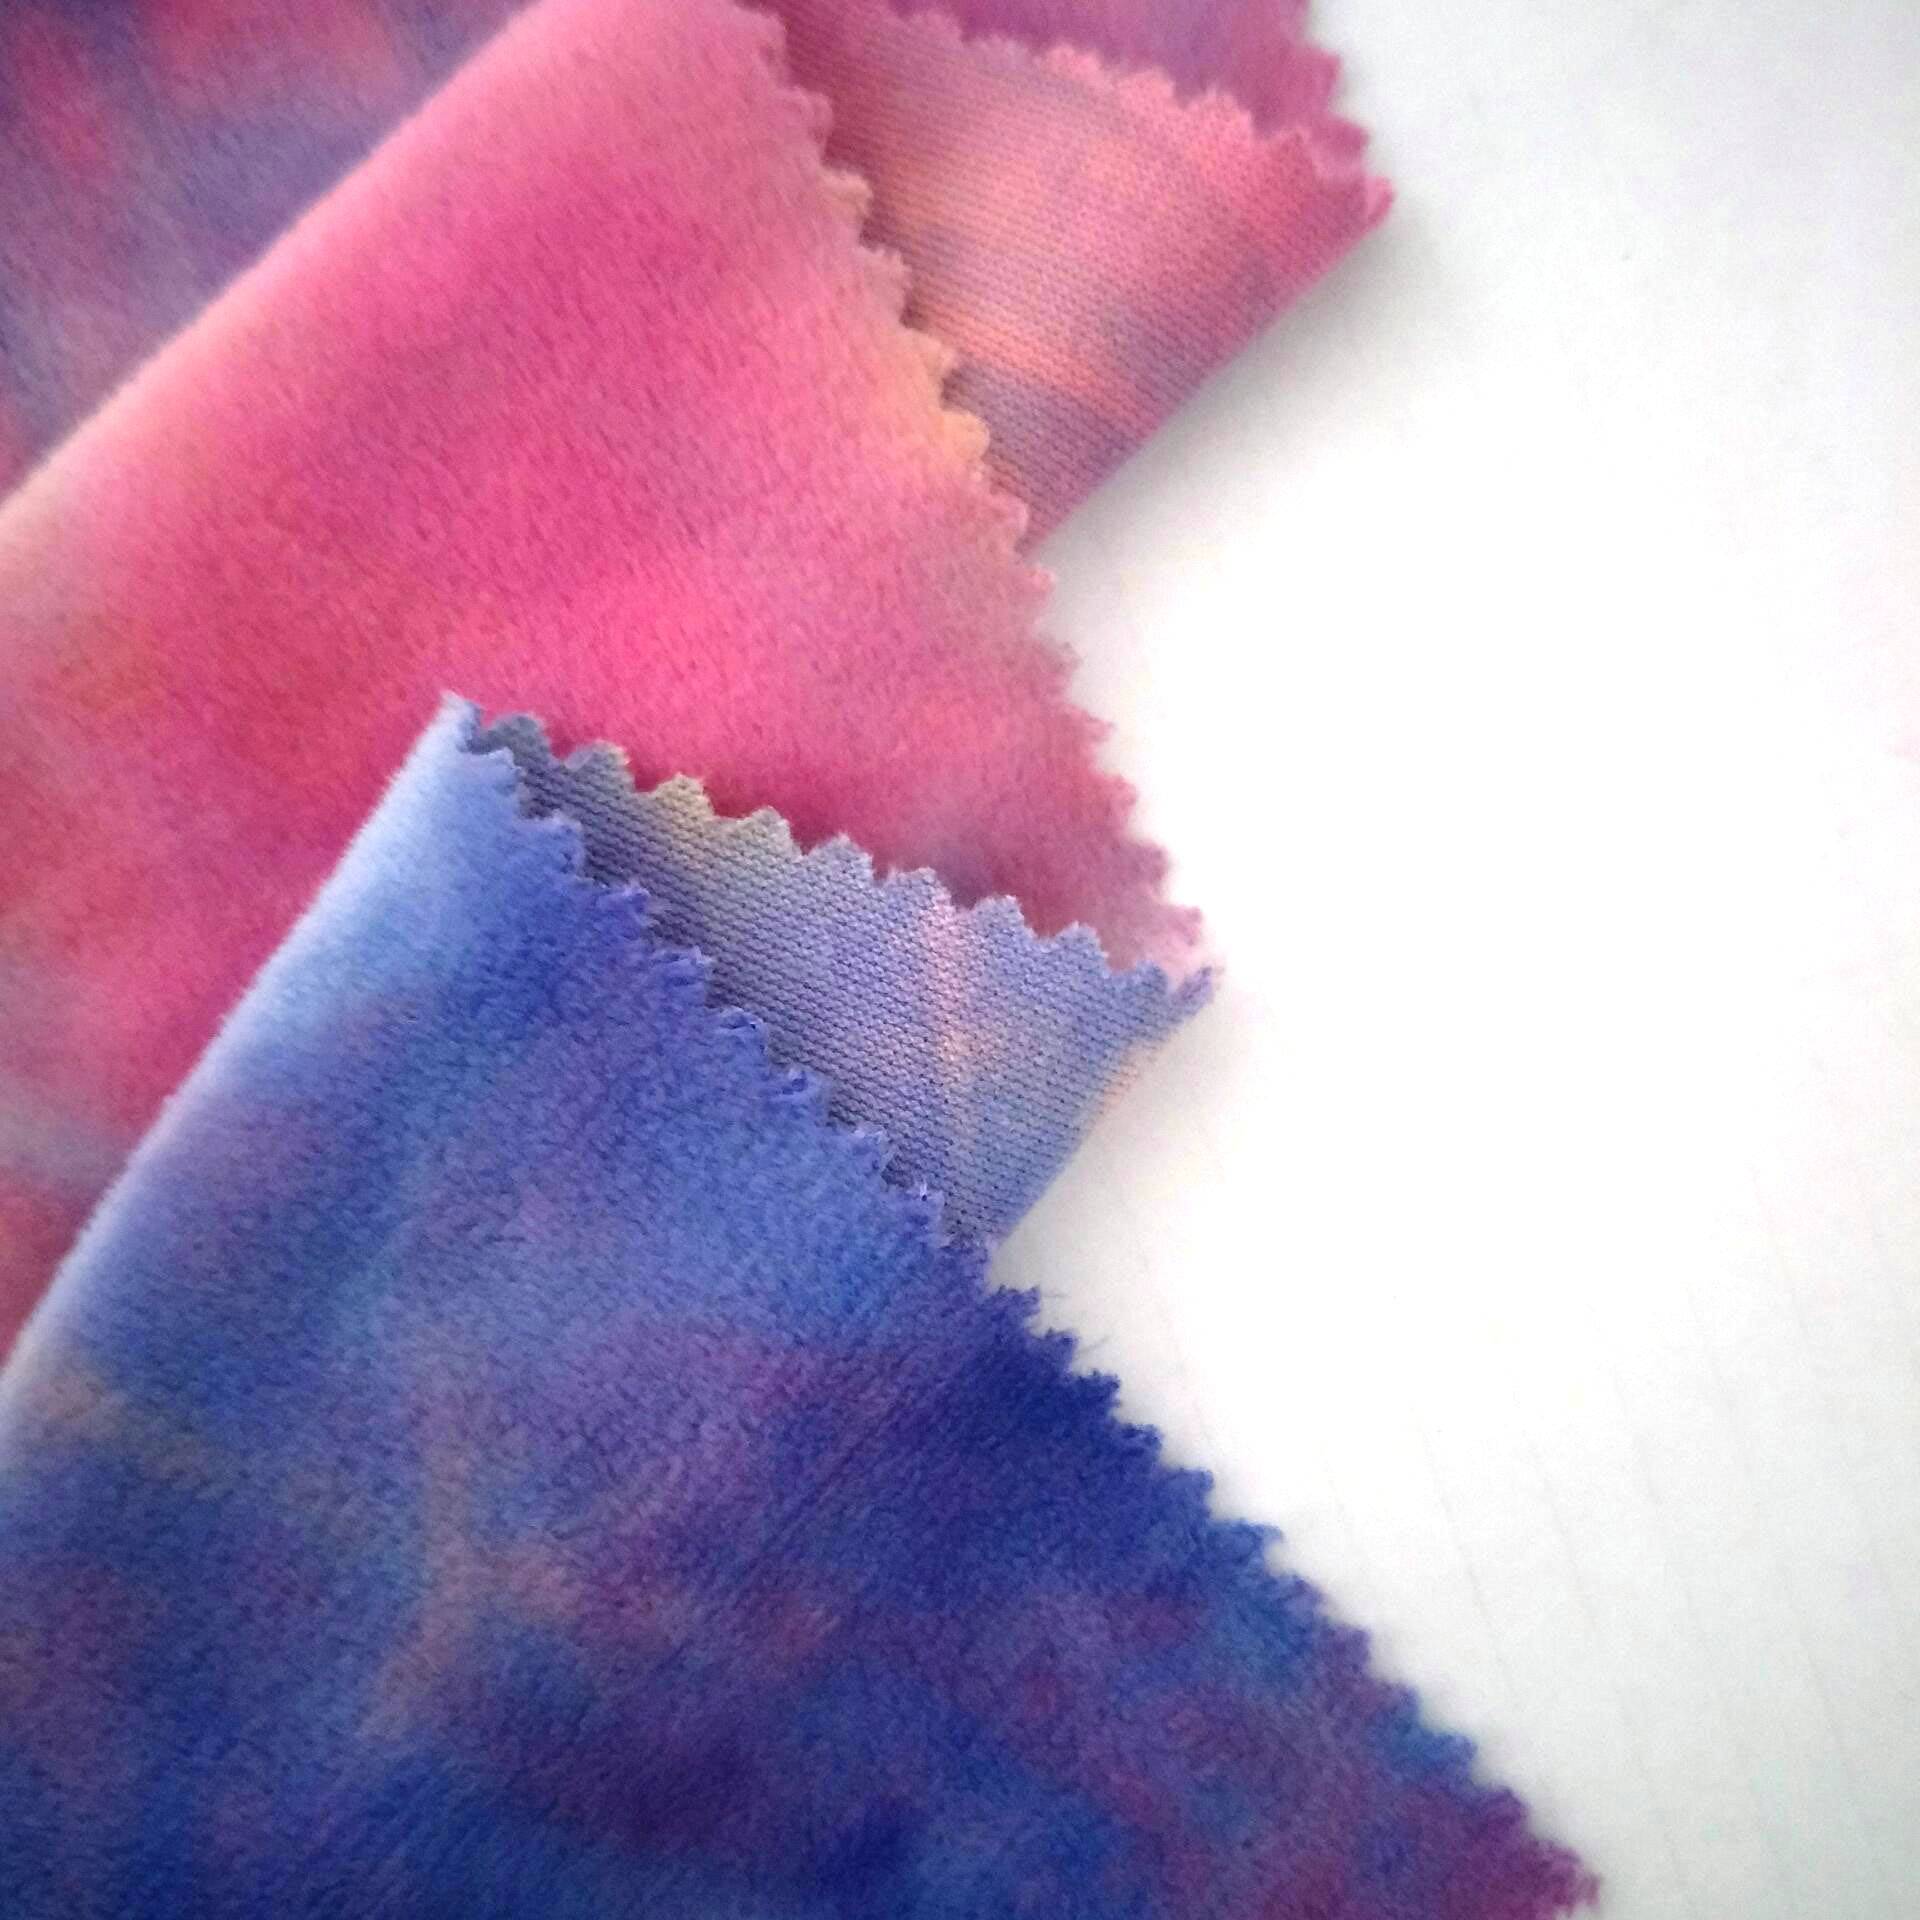 China Hiersteller neisten Design 100% Polyester Tie gefierft super mëll Velveteen Fleece Stoff